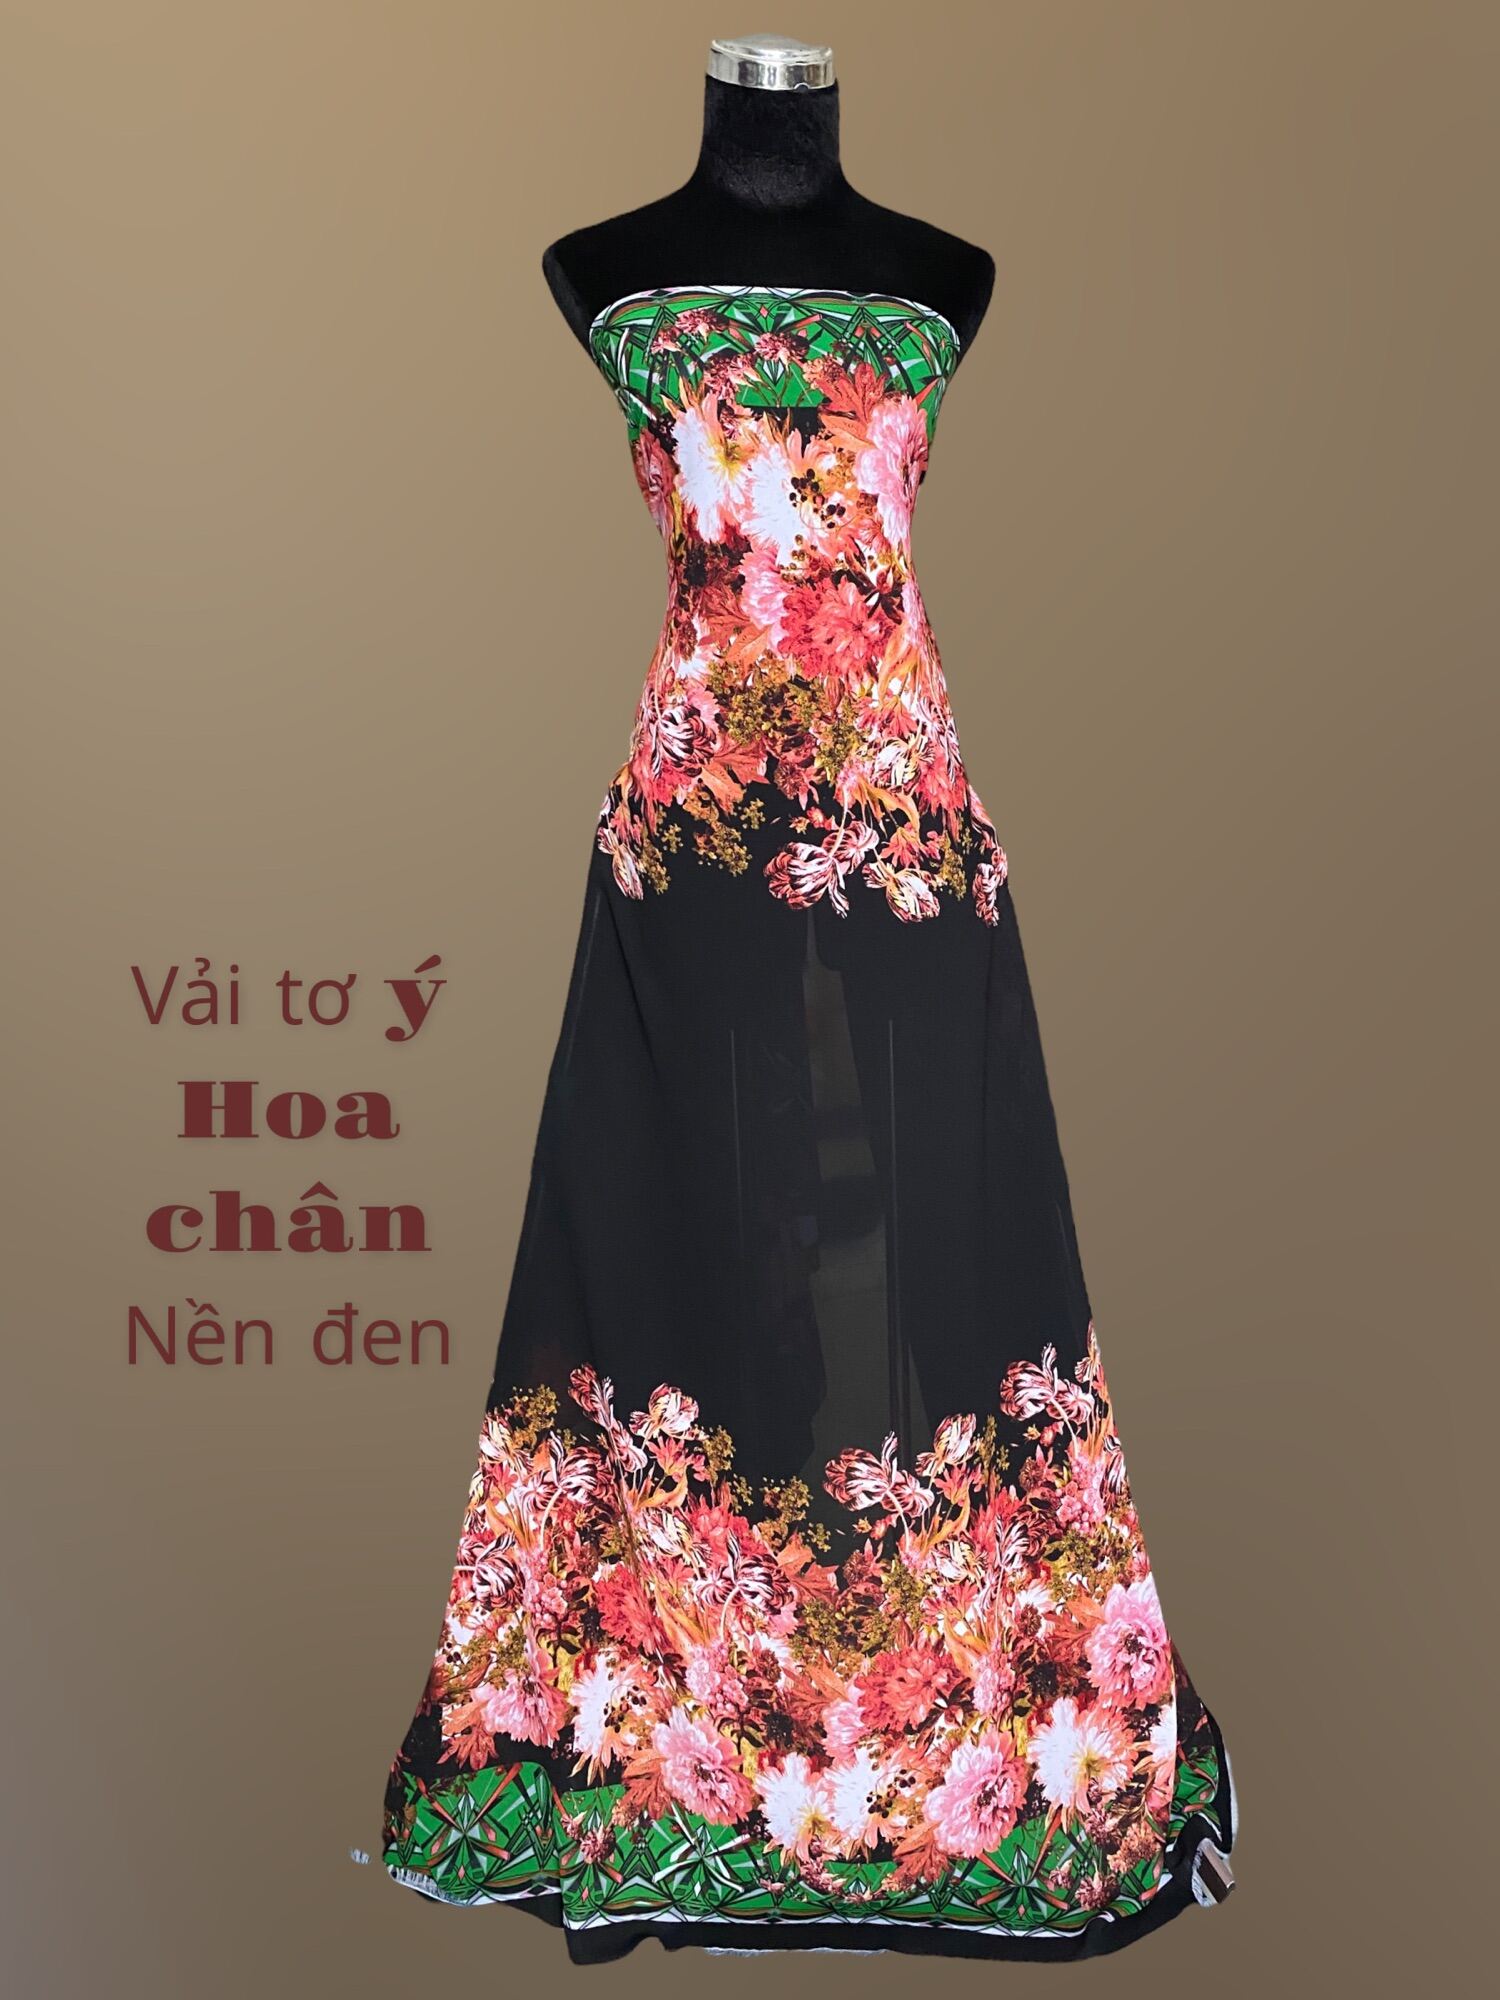 Mua Váy Vải Tơ Ánh Kim Tay Bồng  M tại Duy Thạch Store  Tiki